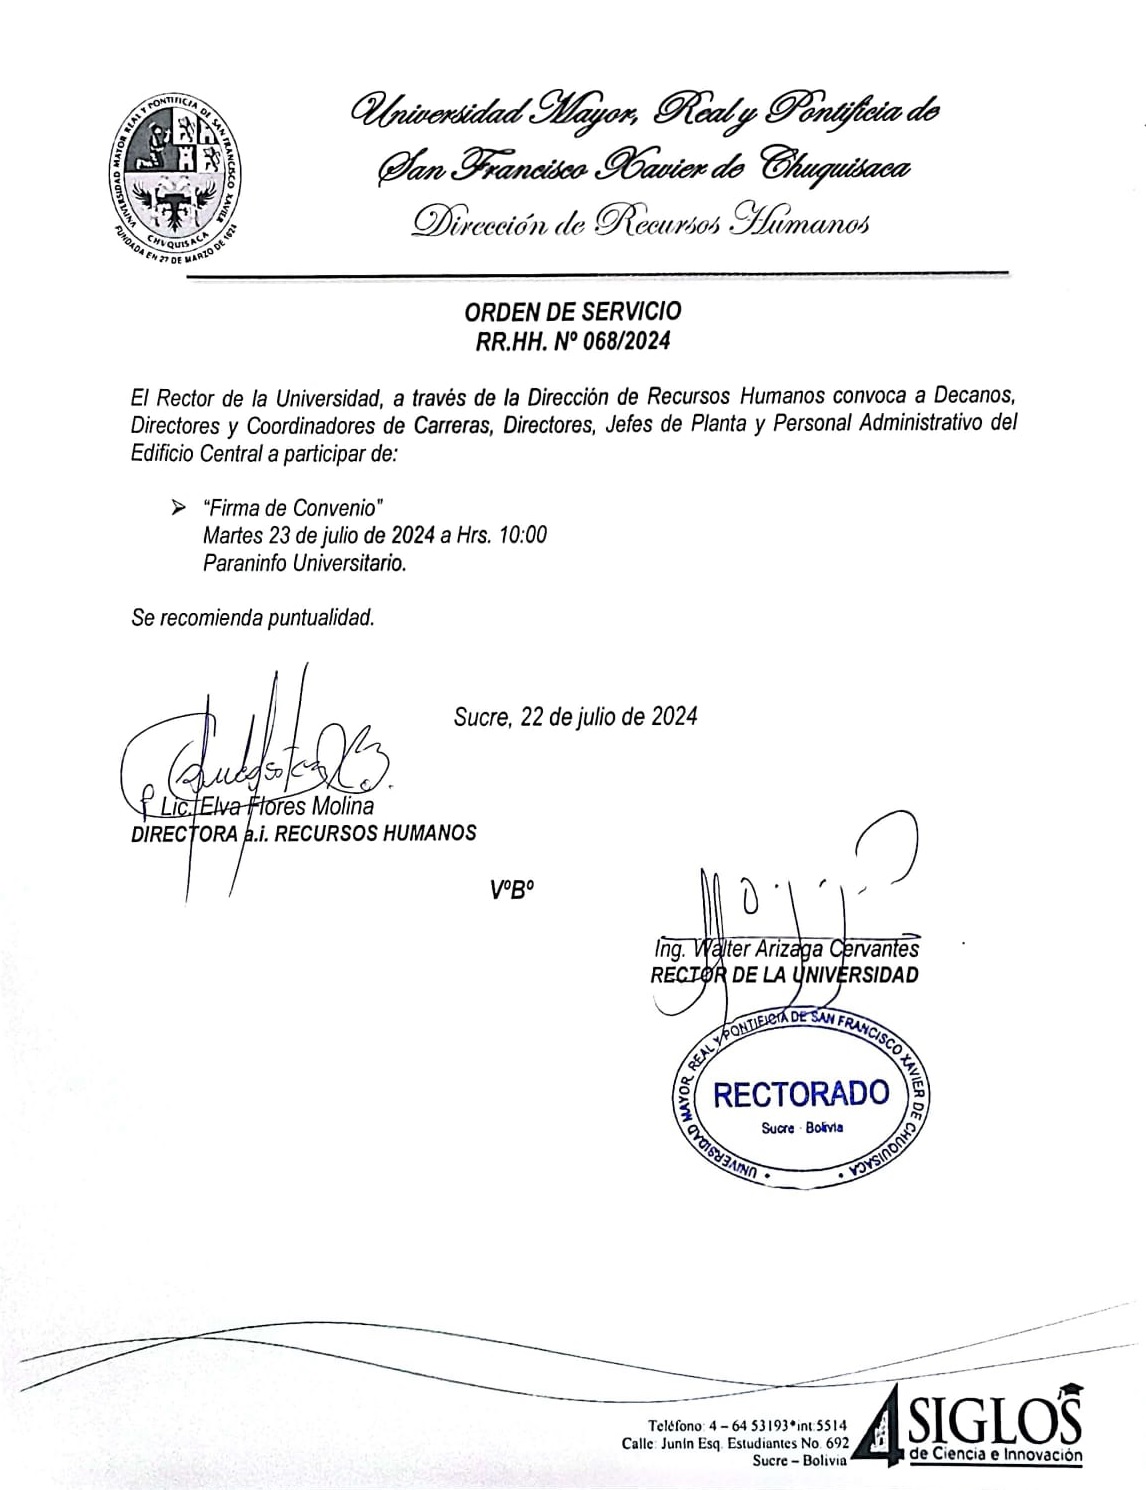 ORDEN DE SERVICIO Nº 068/2024, FIRMA DE CONVENIO INTERINSTITUCIONAL 23 DE JULIO DEL 2024